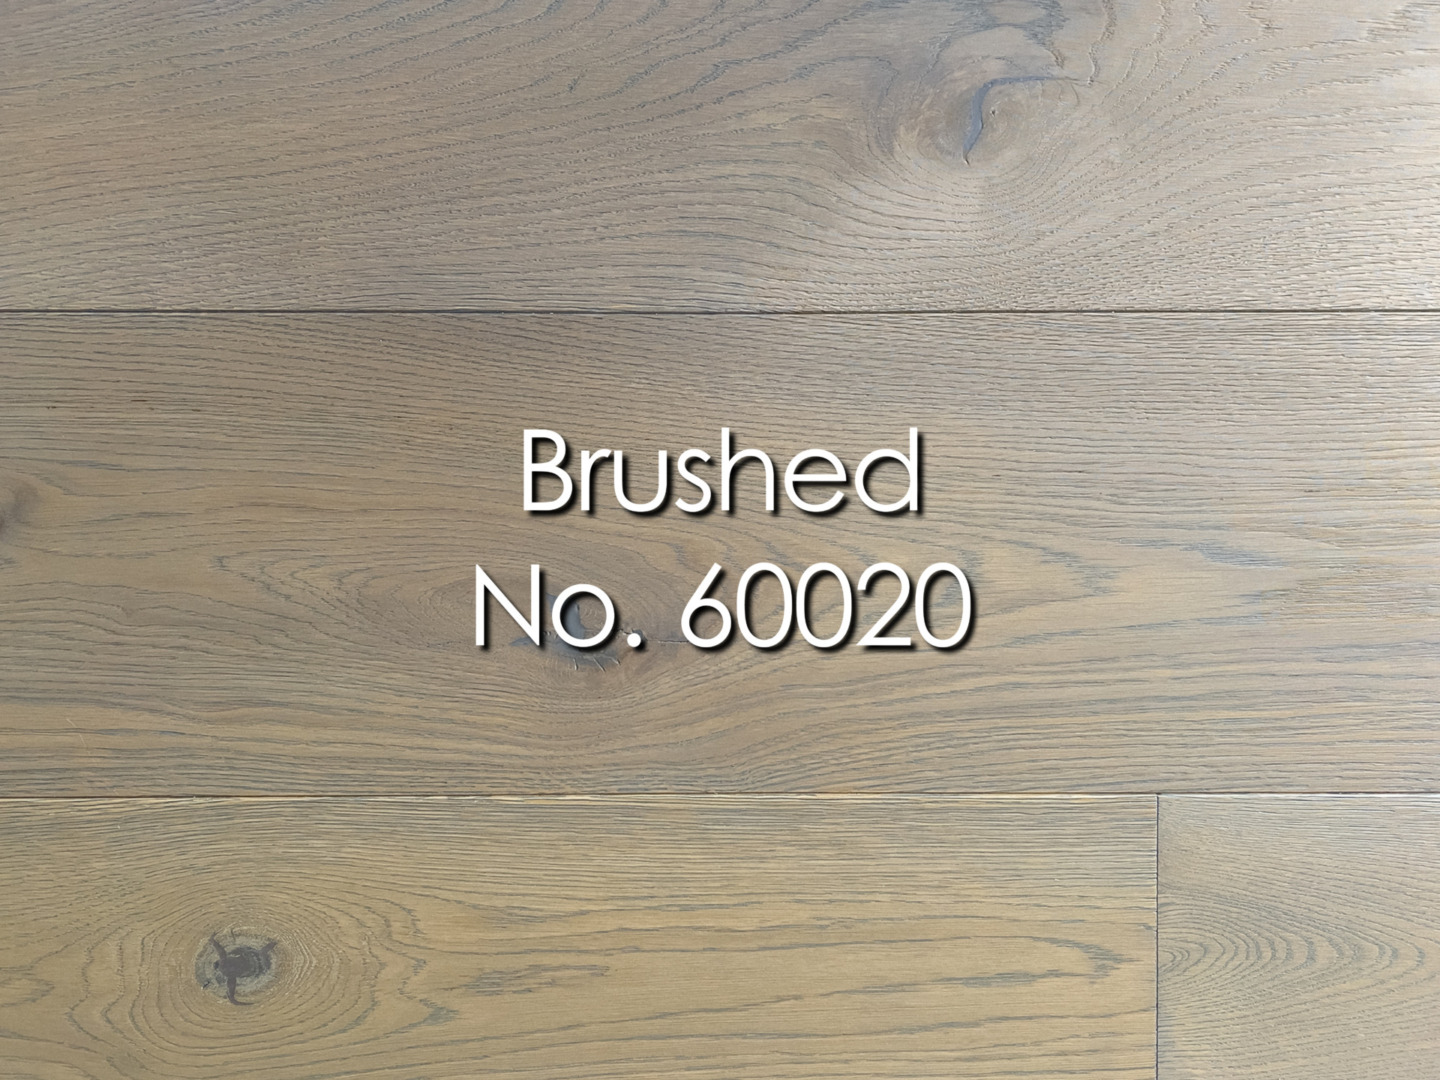 Brushed, Nr. 60020